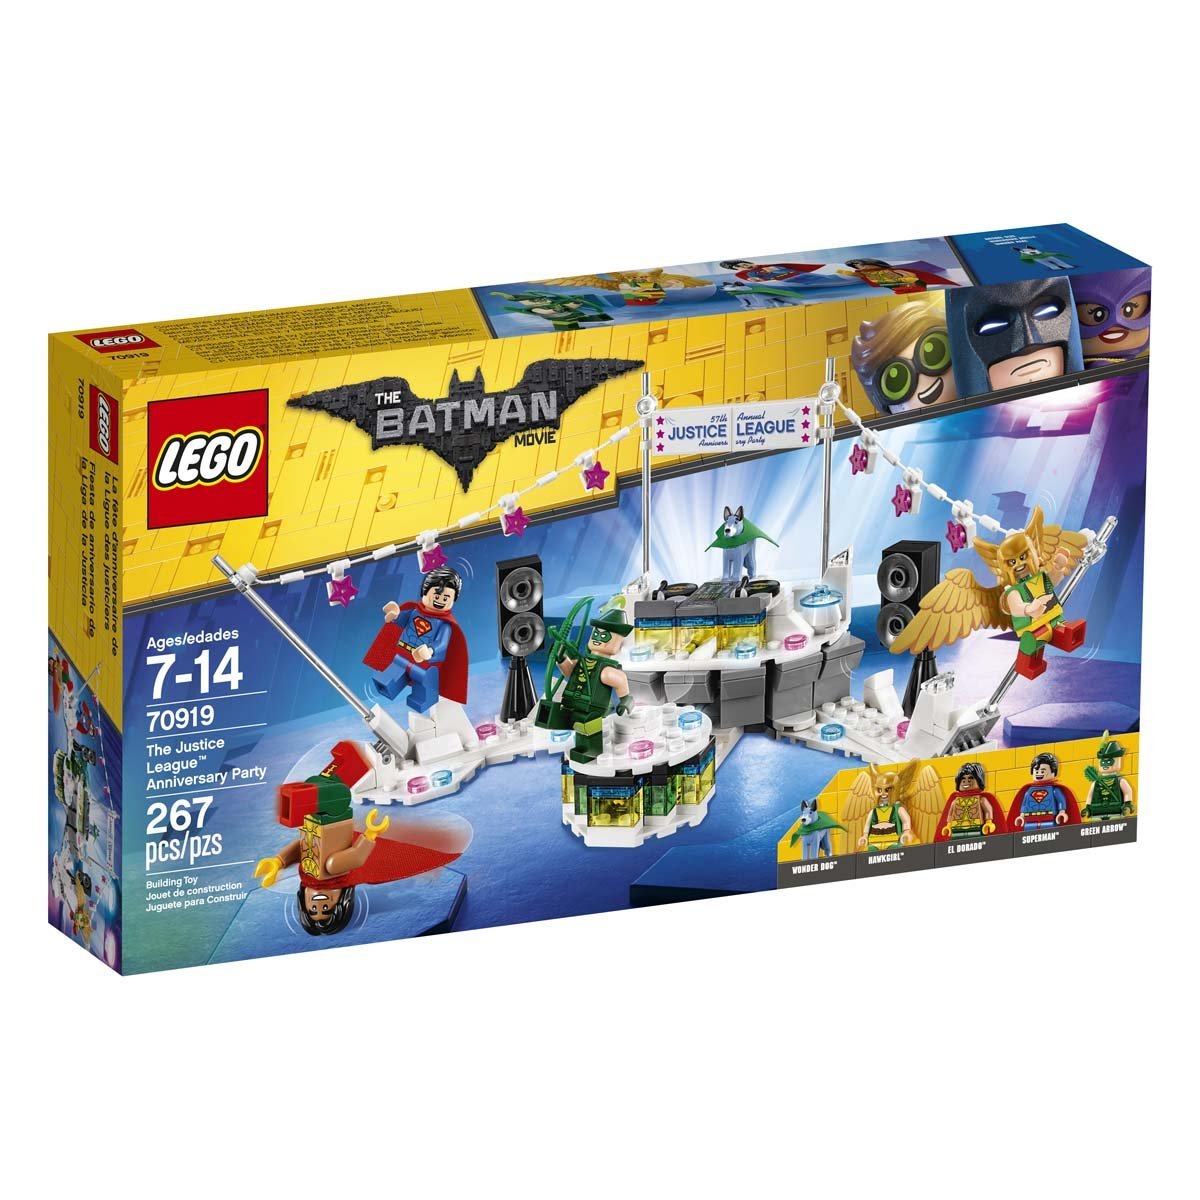 Fiesta de Aniversario de la Liga de la Justicia Lego